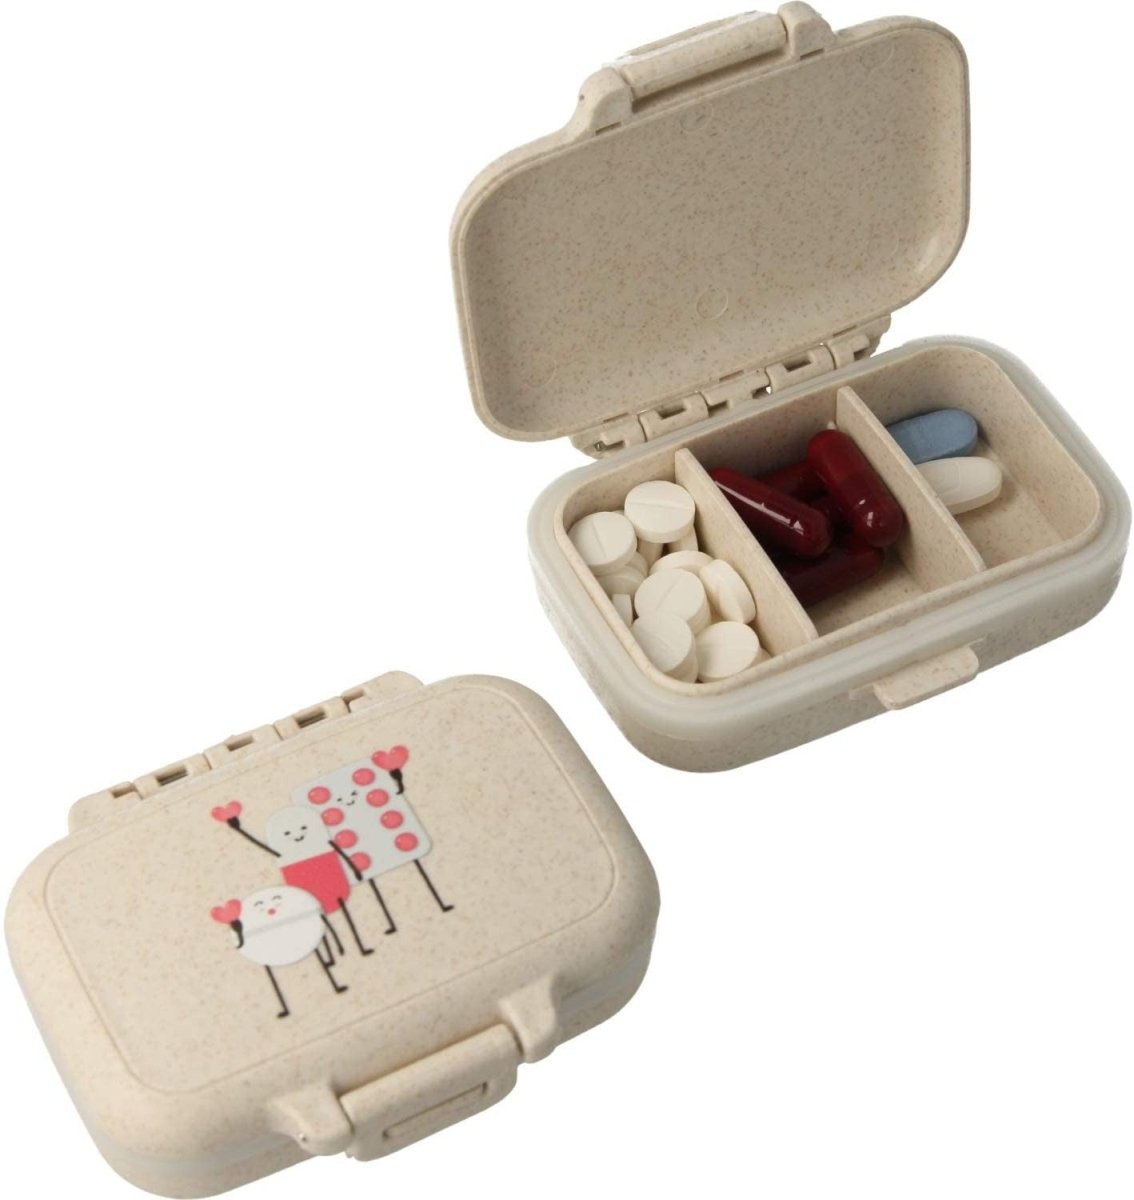 Pastillero pequeño diario bolsillo - 3 compartimentos - Organizador de pastillas pill box estuche rectangular - Color beige - movilcom.com